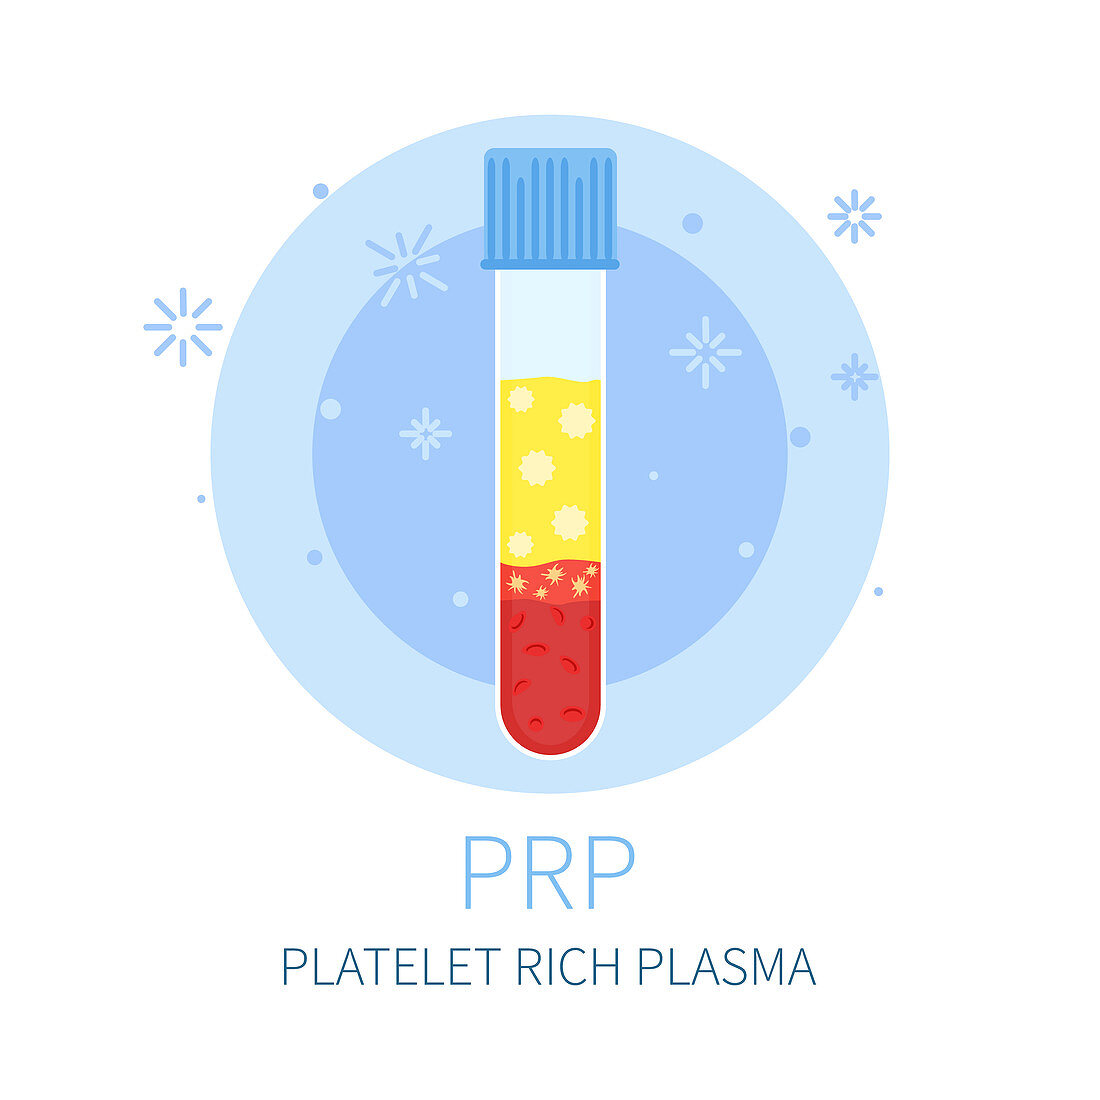 PRP treatment, conceptual illustration